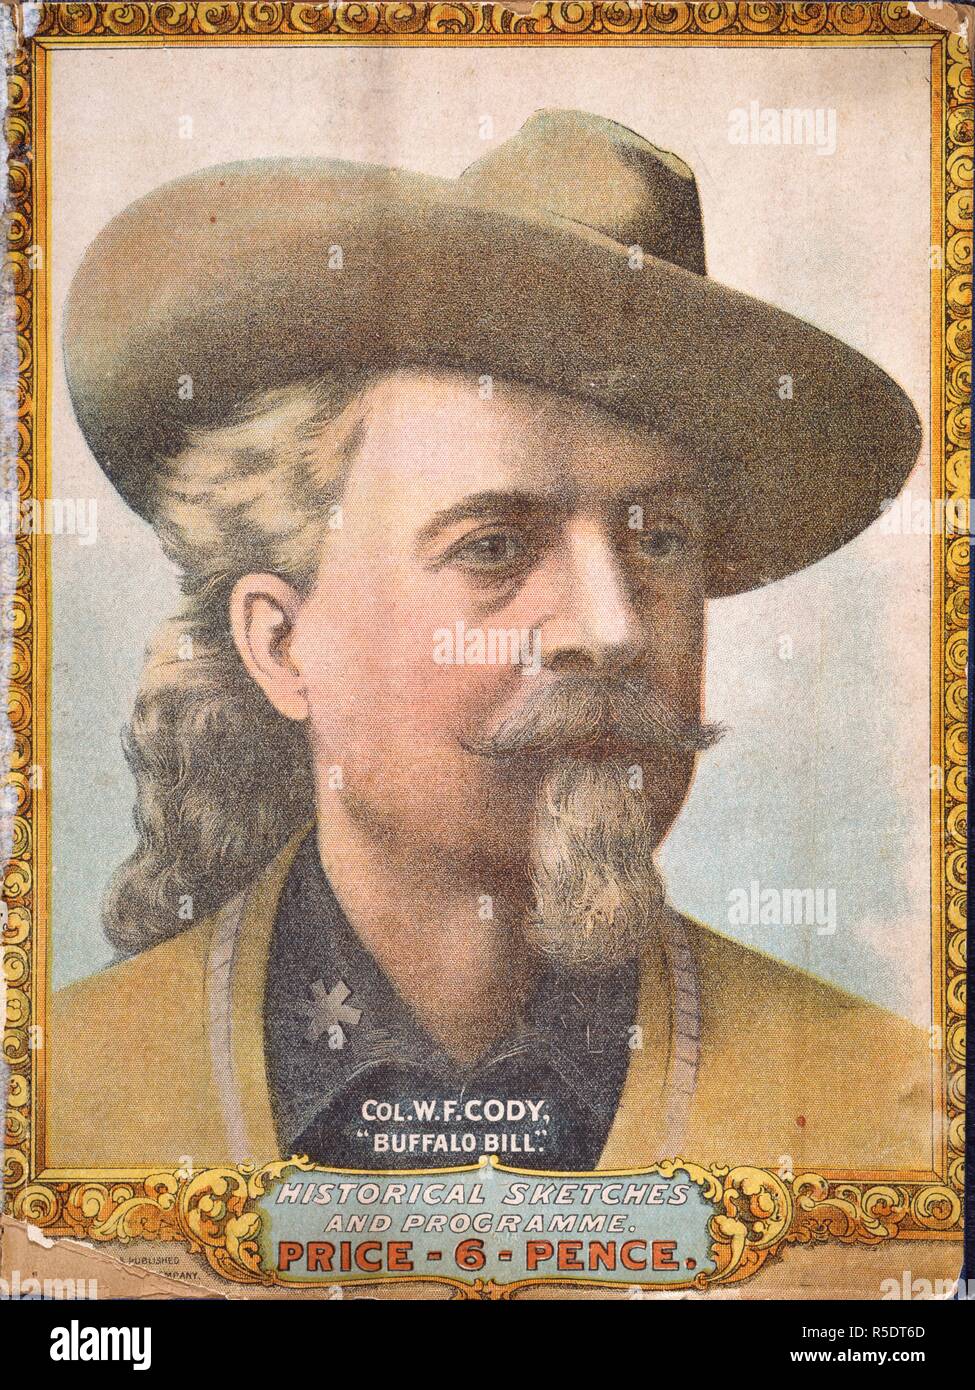 Il colonnello W.F Cody. (1846 - 1917) ; noto come Buffalo Bill. Noi showman. Ritratto. Buffalo Bill's Wild West e Congess di marcia irregolare. Londra, 1903. Il Colonnello William Frederick Cody ( 1846 - 1917 ) ; noto come Buffalo Bill. Noi showman. Ritratto. Fonte: C.140.a.56, il coperchio. Foto Stock